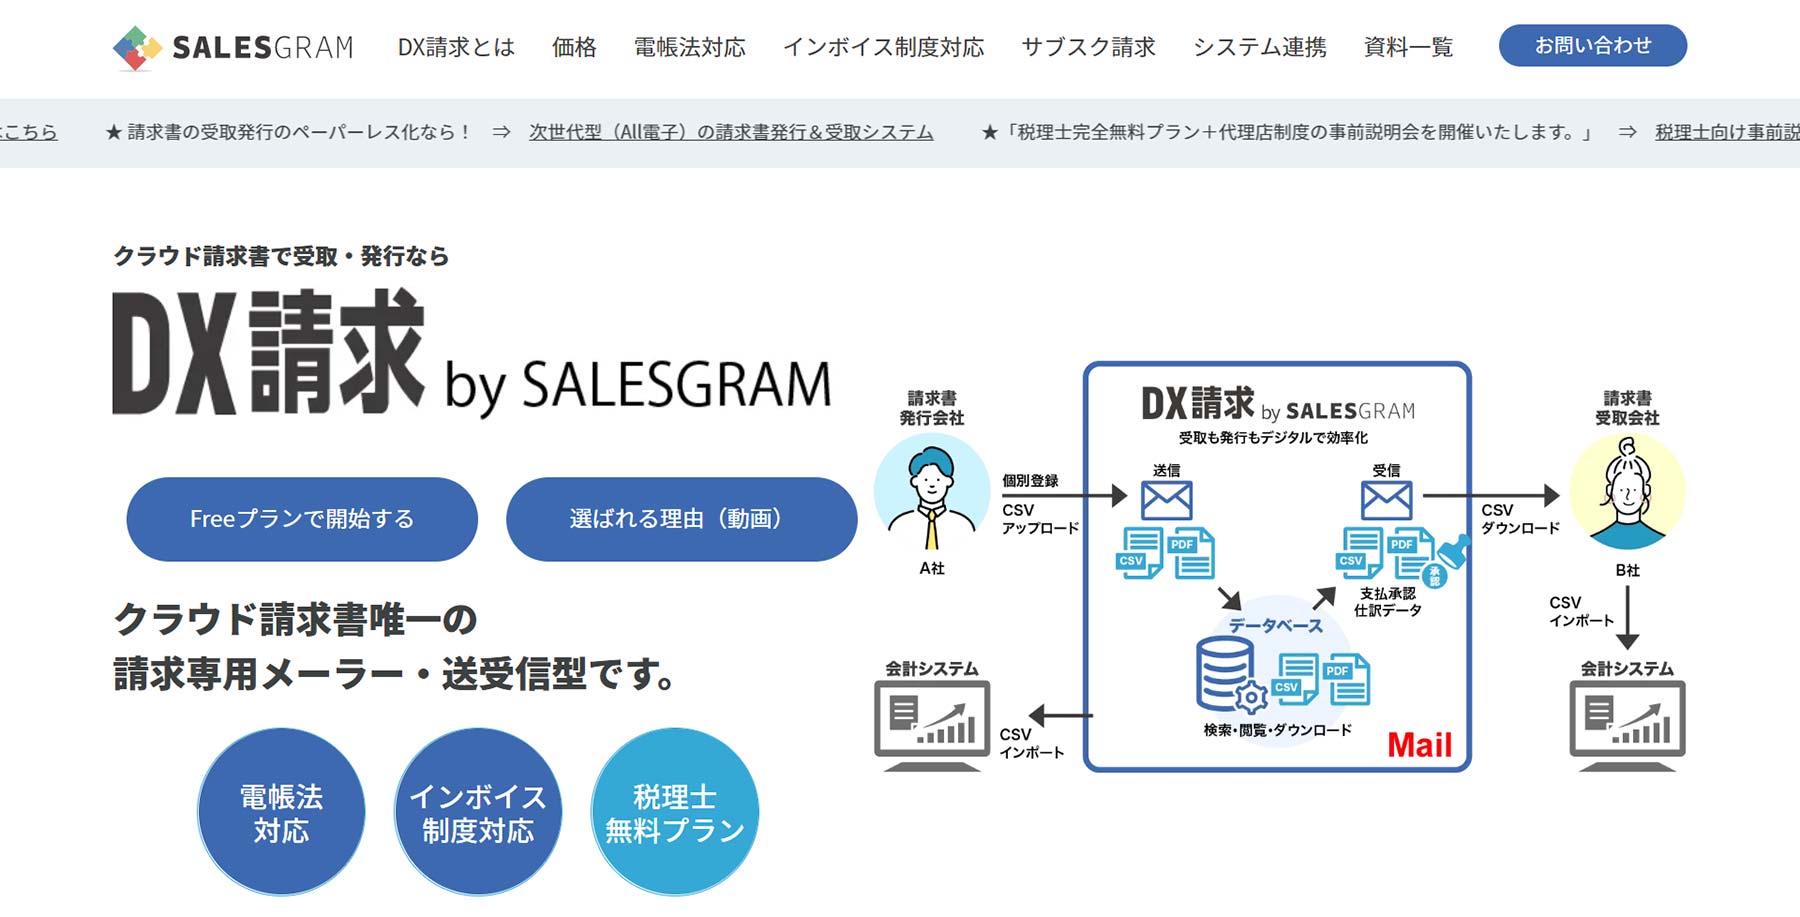 DX請求 by SALESGRAM公式Webサイト